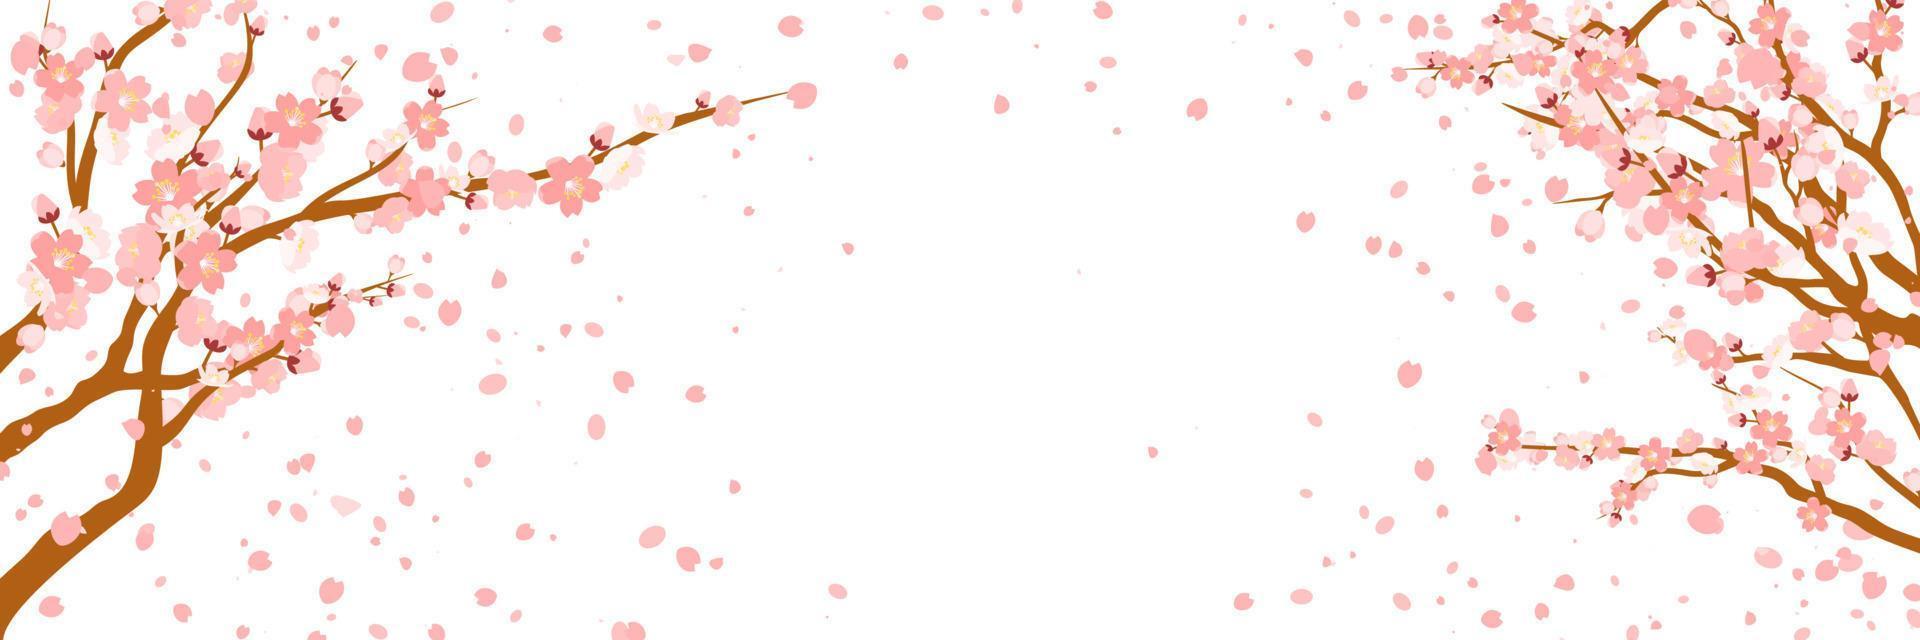 takken met roze bloemen en kers knoppen. sakura. bloemblaadjes vliegend in de wind. geïsoleerd Aan wit achtergrond. vector illustratie.